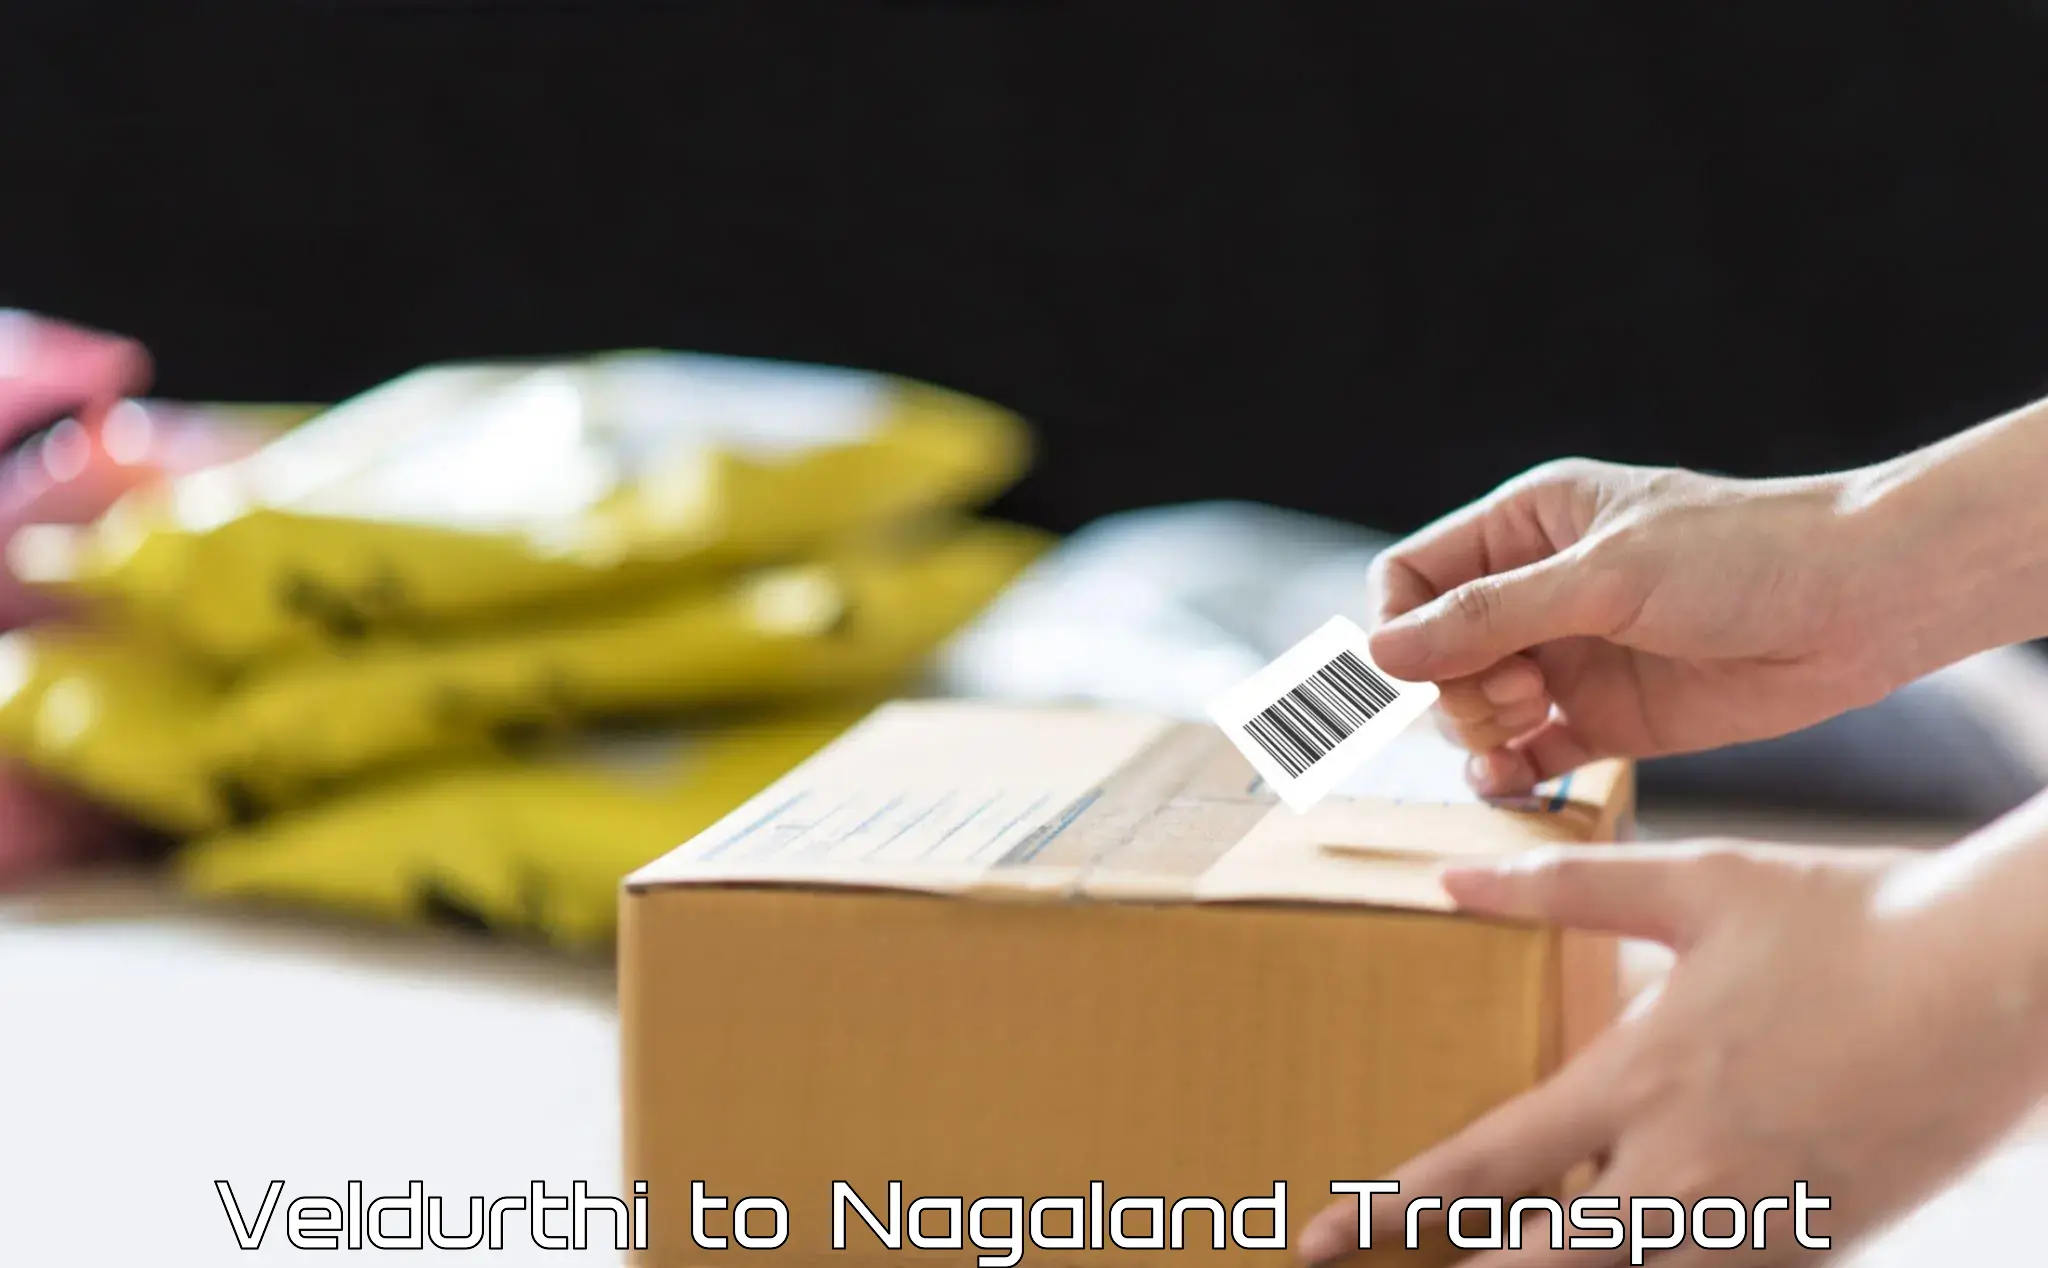 Cargo train transport services Veldurthi to Nagaland